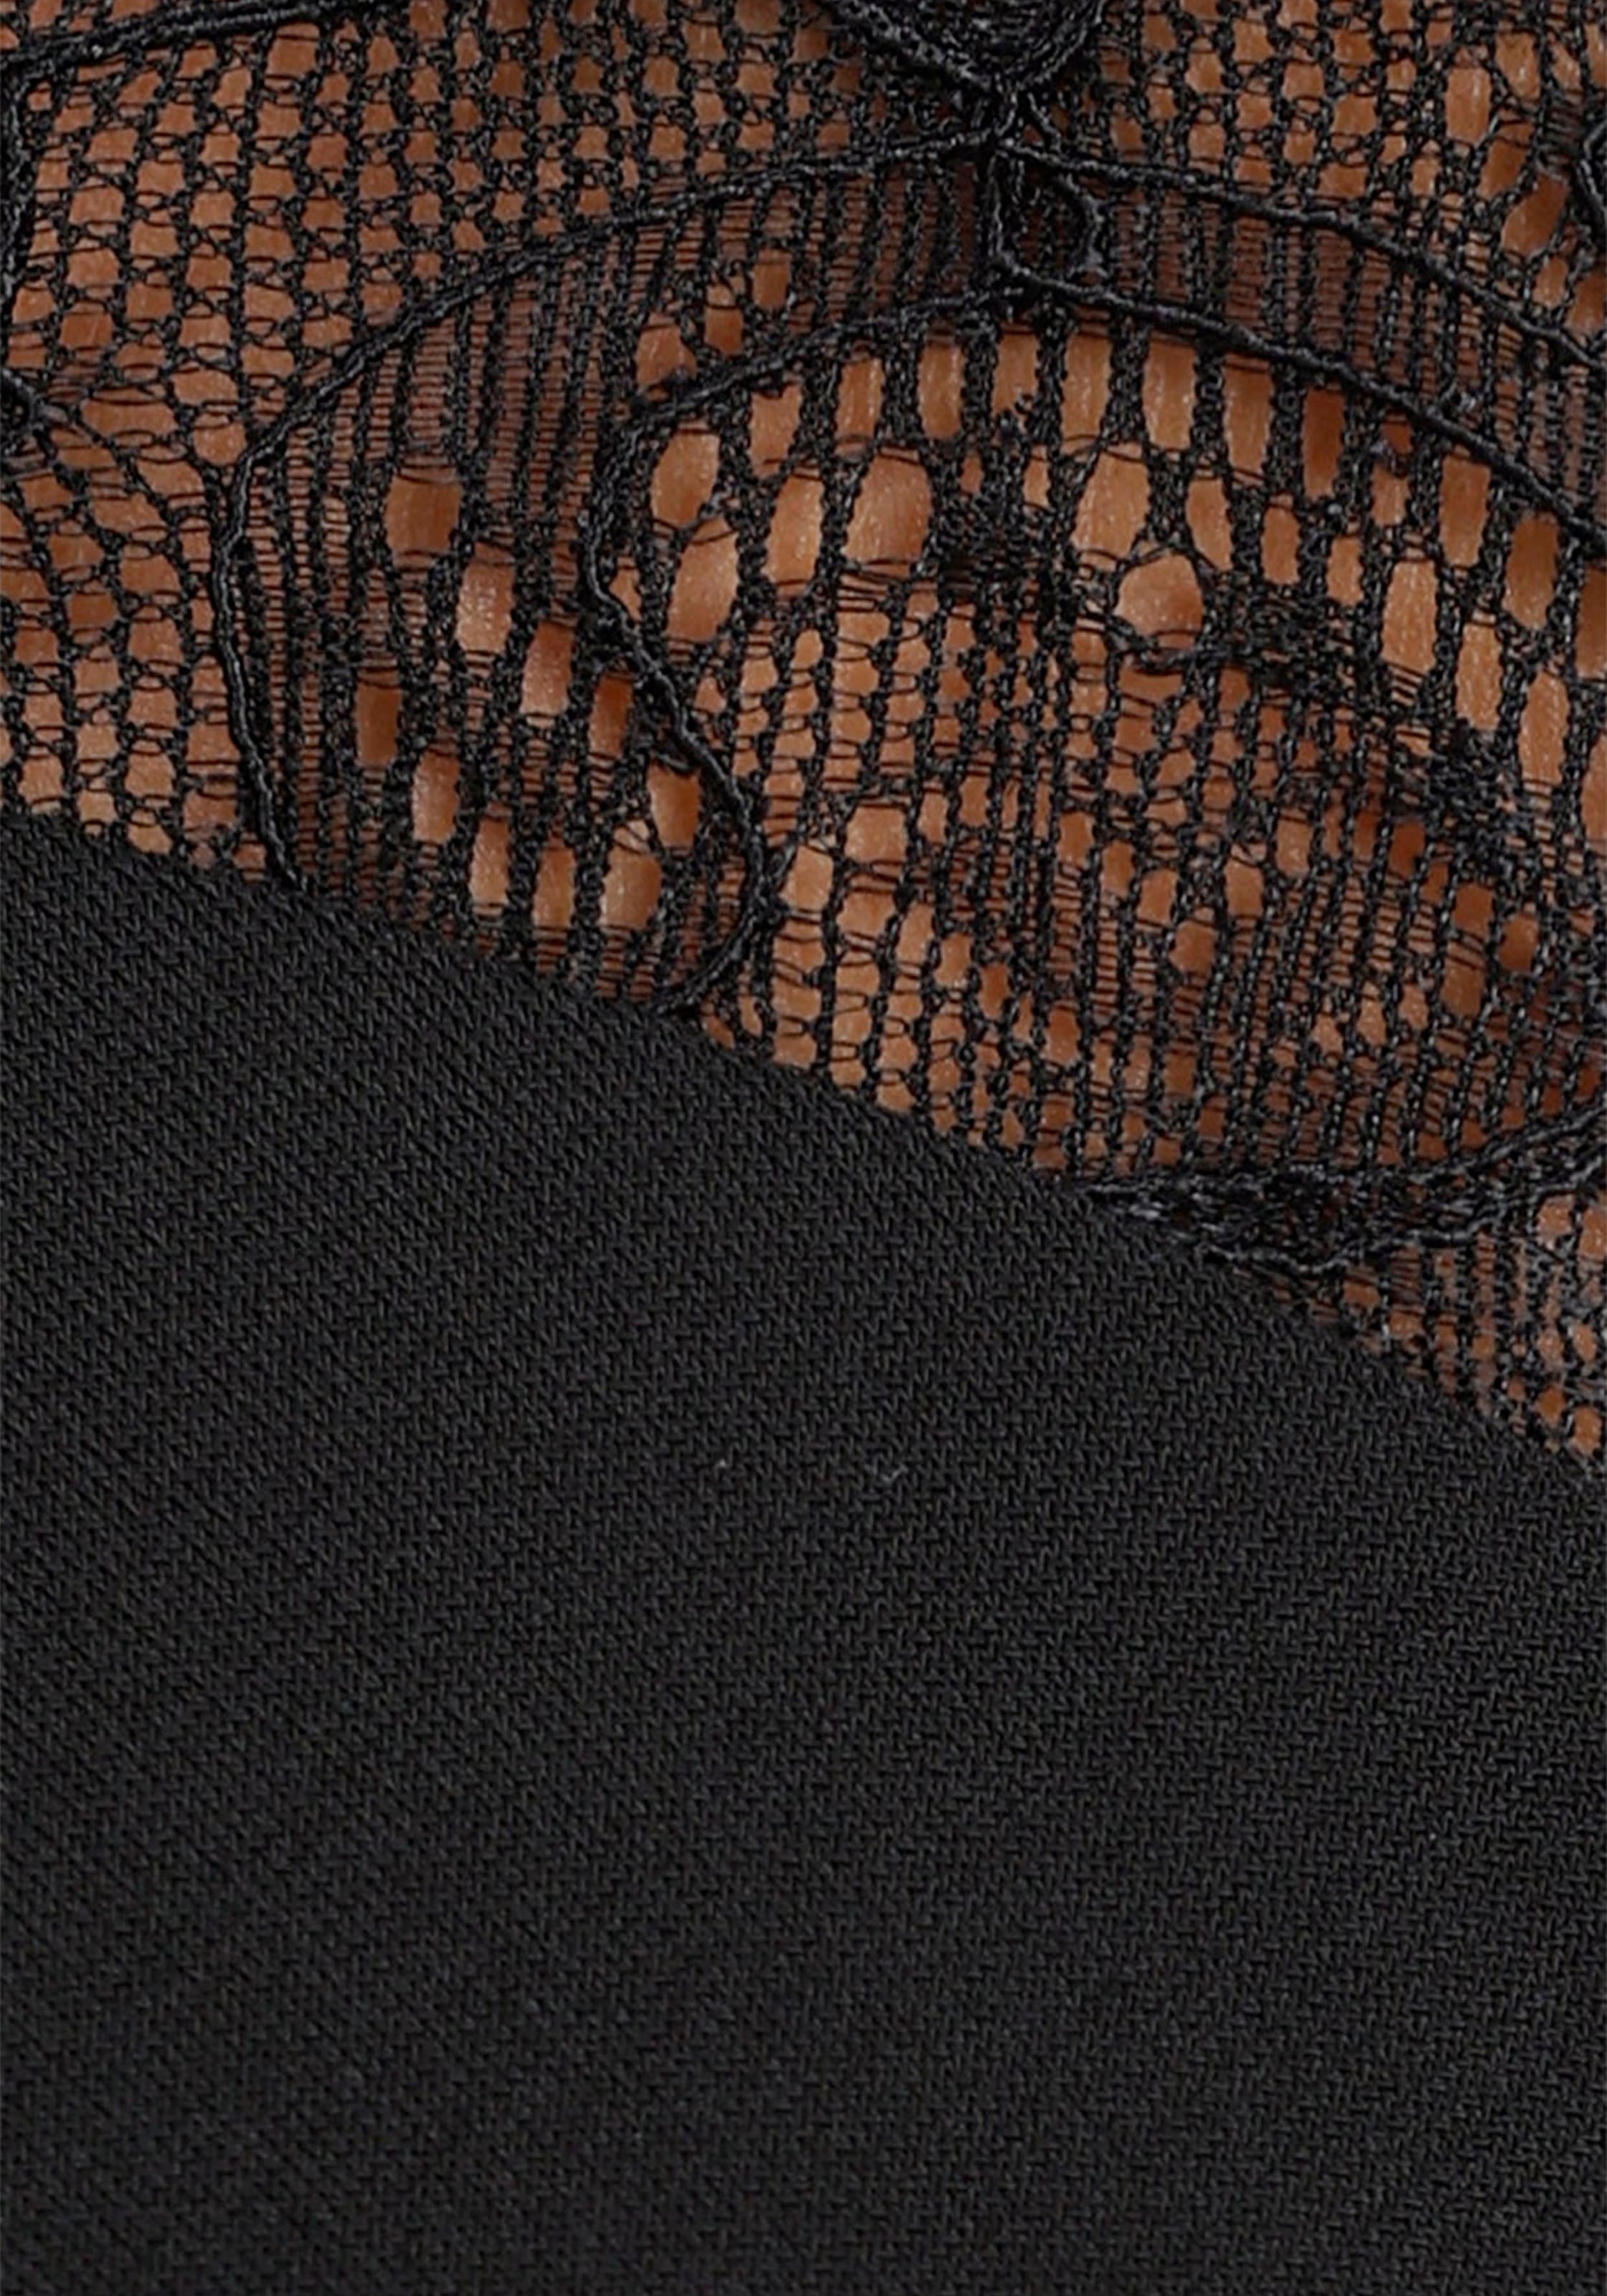 ♕ und Jerseykleid, bei geknotetem mit feinen Melrose Spitzenärmeln Ausschnitt